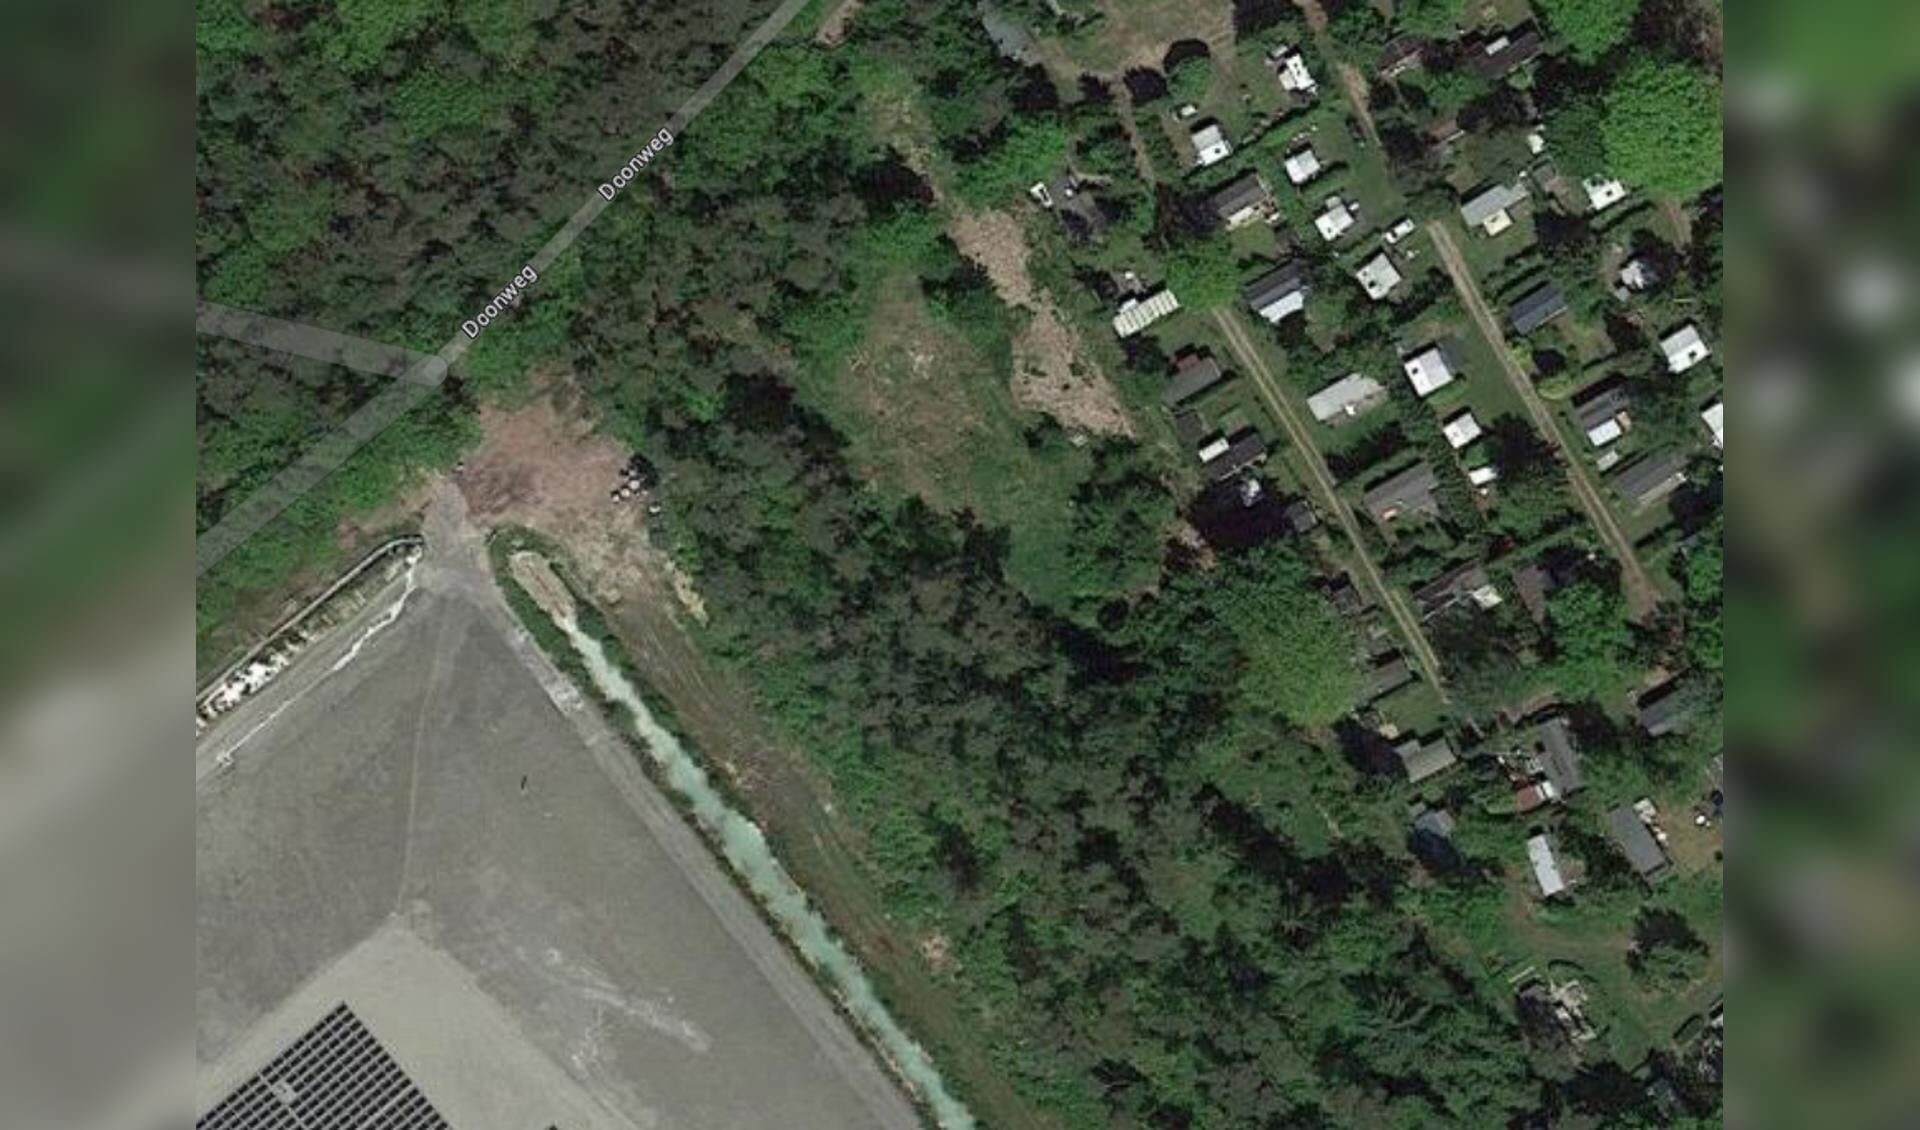 Camping Robertsoord ligt naast de vuilstortplaats. Bron: Google Maps